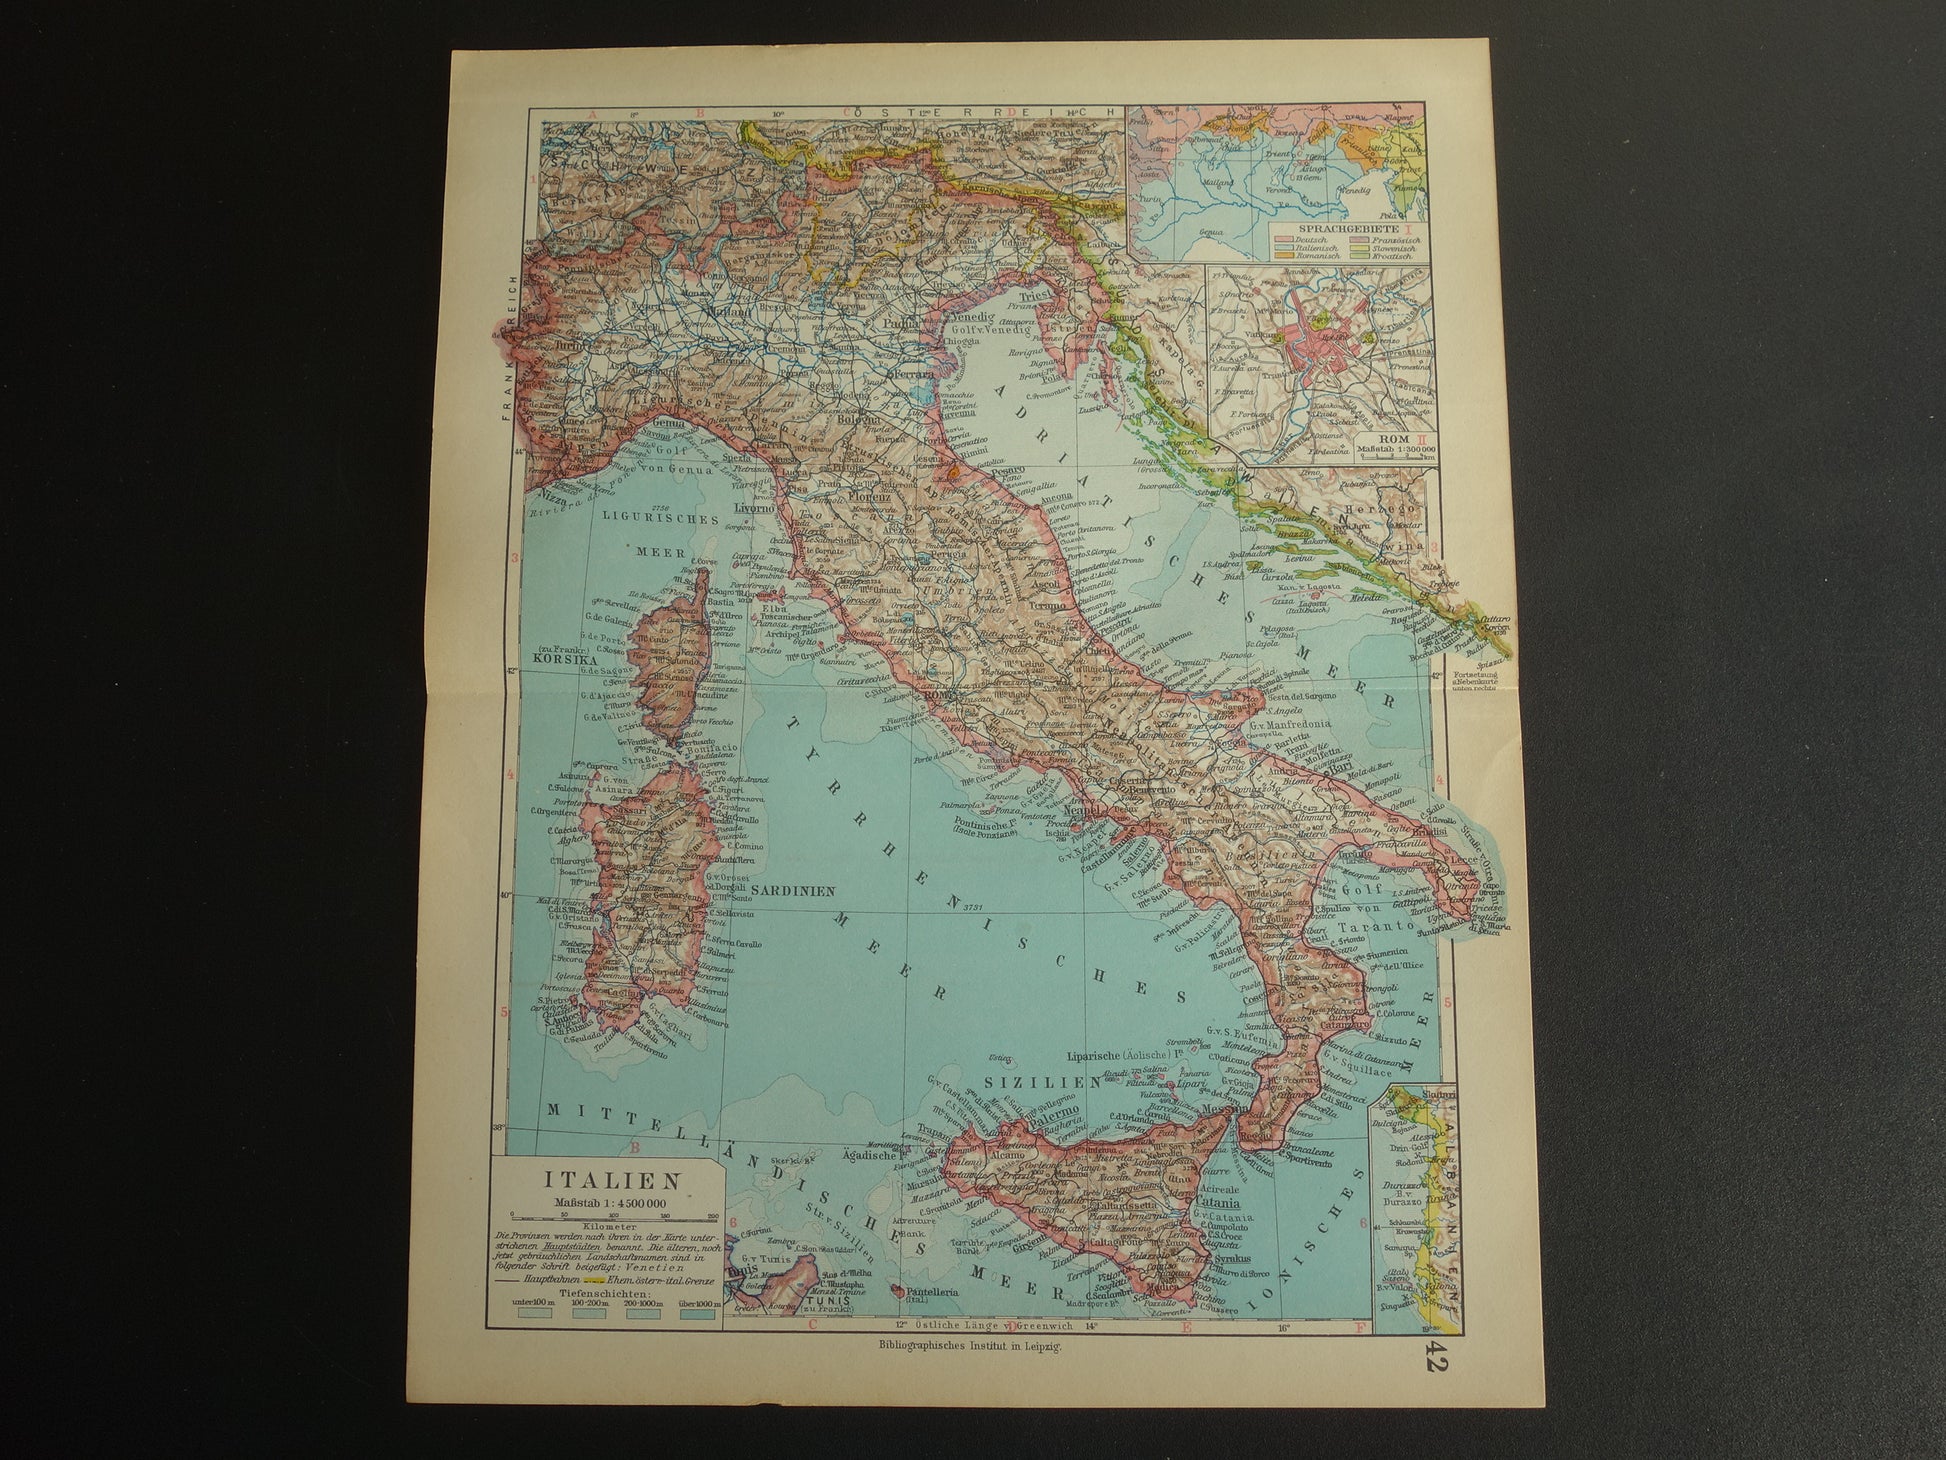 Beneden afronden Bij naam escort Oude landkaart van ITALIË uit 1928 originele vintage kaart Rome –  Oudekaarten.com